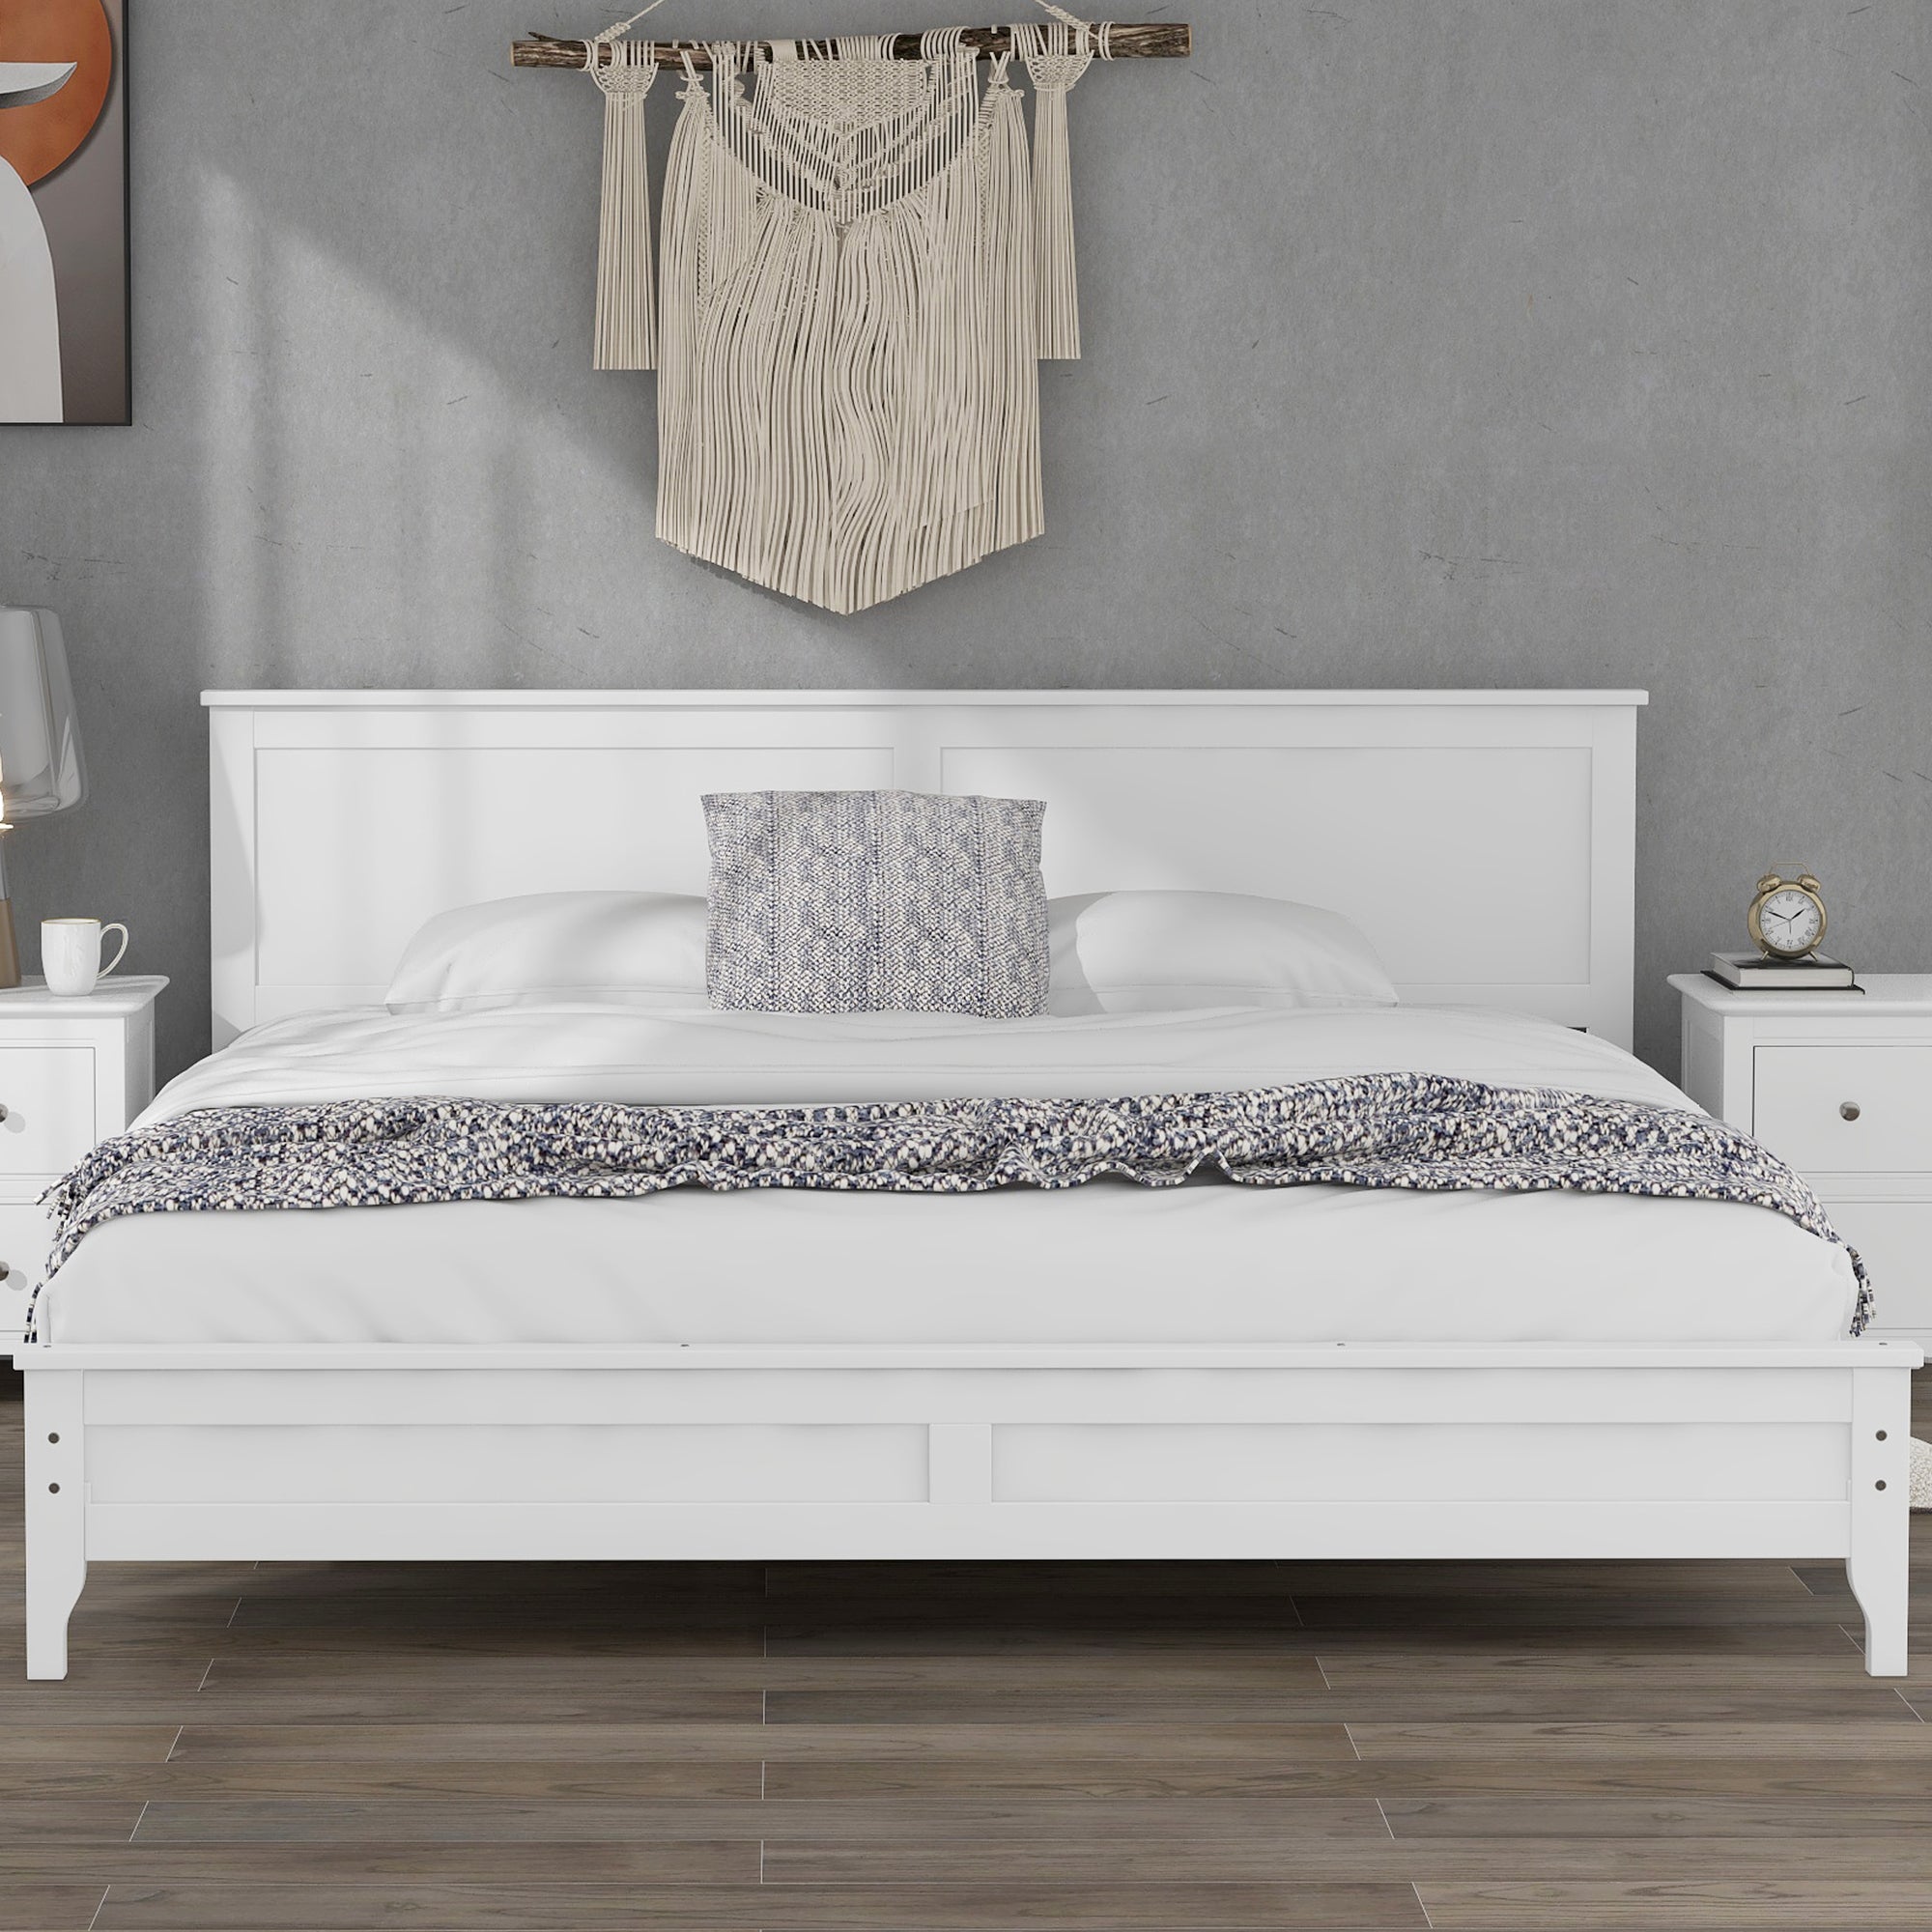 Modern White Solid Wooden Platform Bed Frame By: Alabama Beds